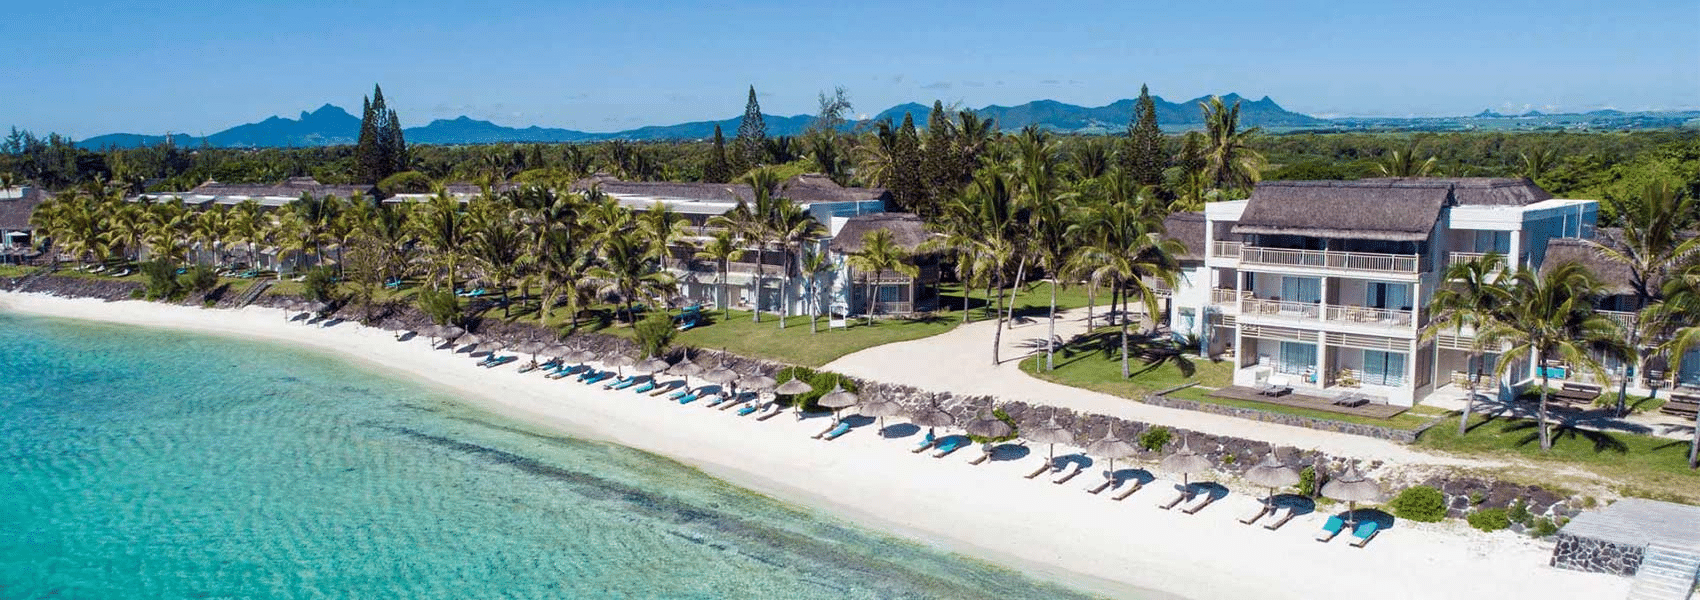 Solana Beach Resort Mauritius Image